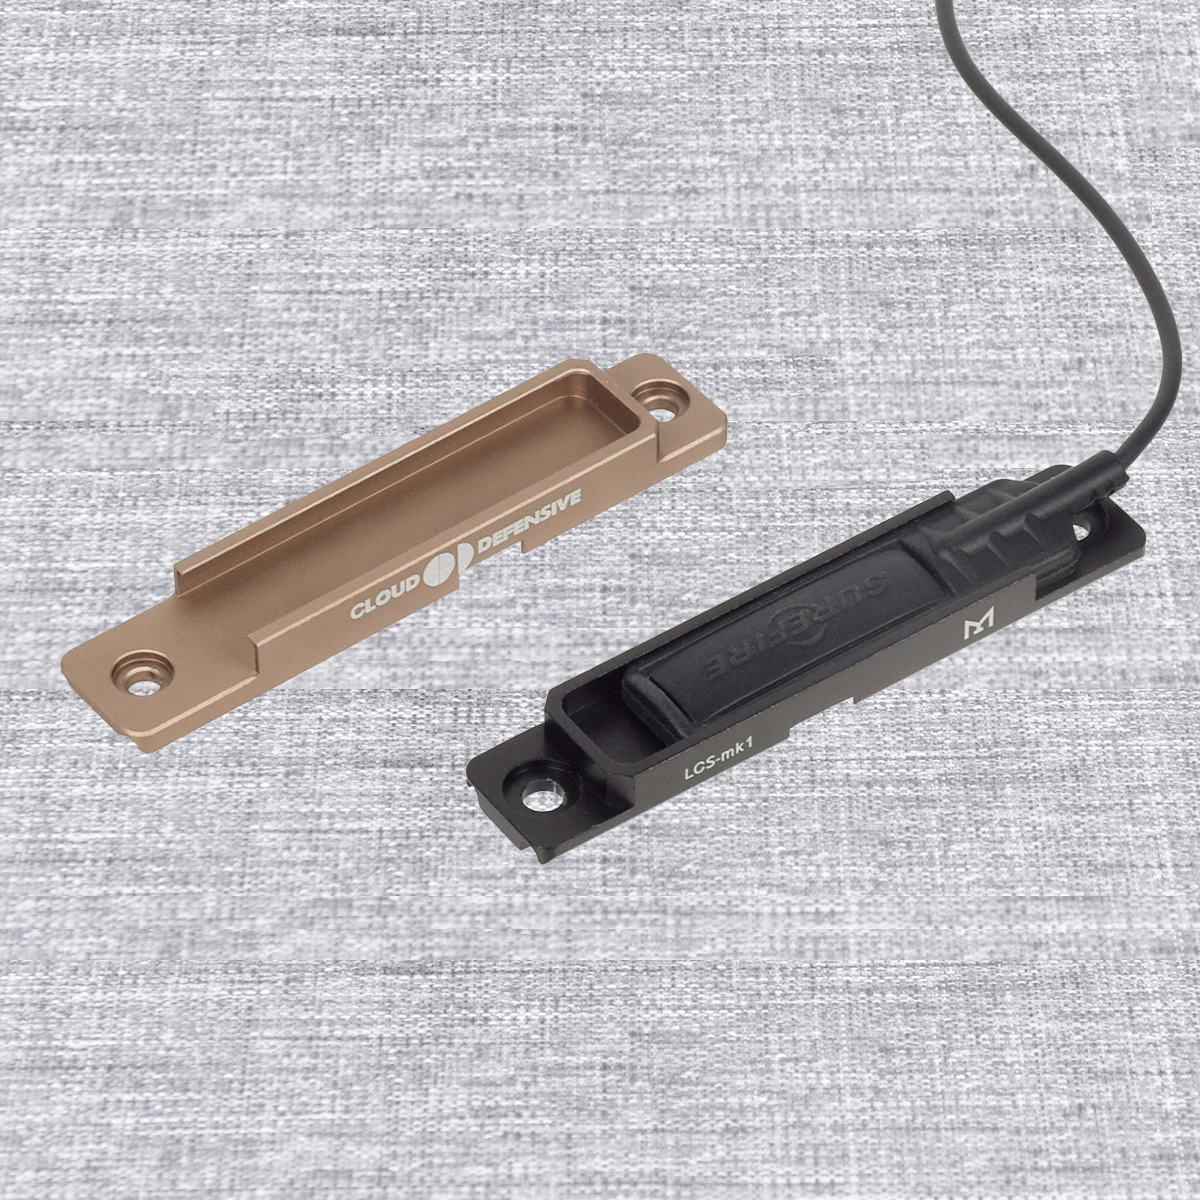 Tod m600 m300 Scout Licht Taschenlampe Remote Tape Druck kissen Schalter mlok keymod 20mm Schienen montage Platten Zubehör